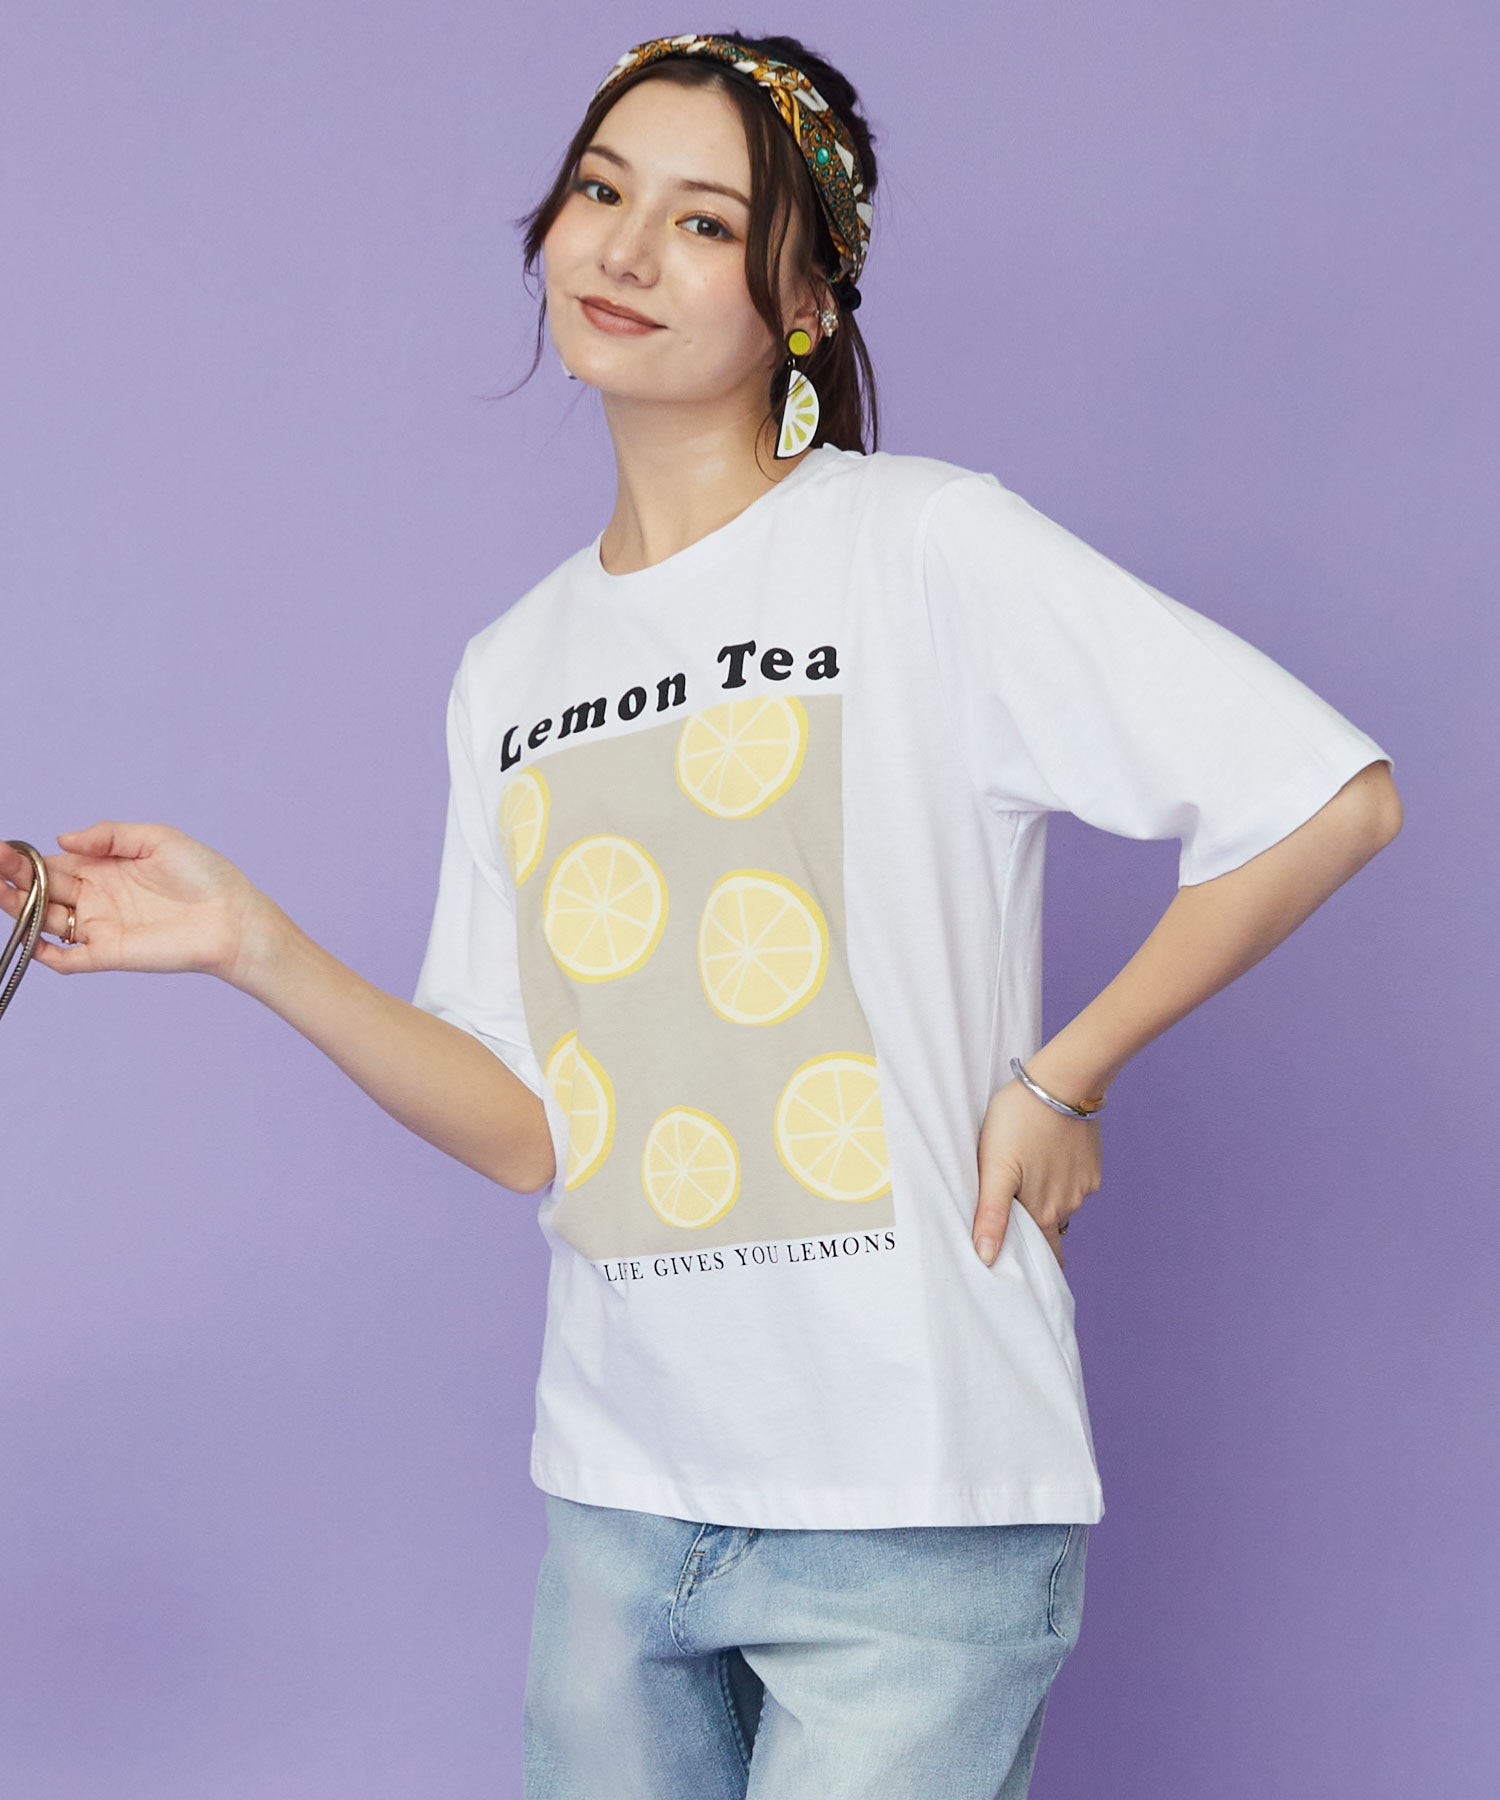 【KAFFE】フルーツプリントTシャツ | JETSET SOLO PLUS(ジェットセットソロプラス) 公式通販 | インポート レディース ファッション きれいめカジュアル